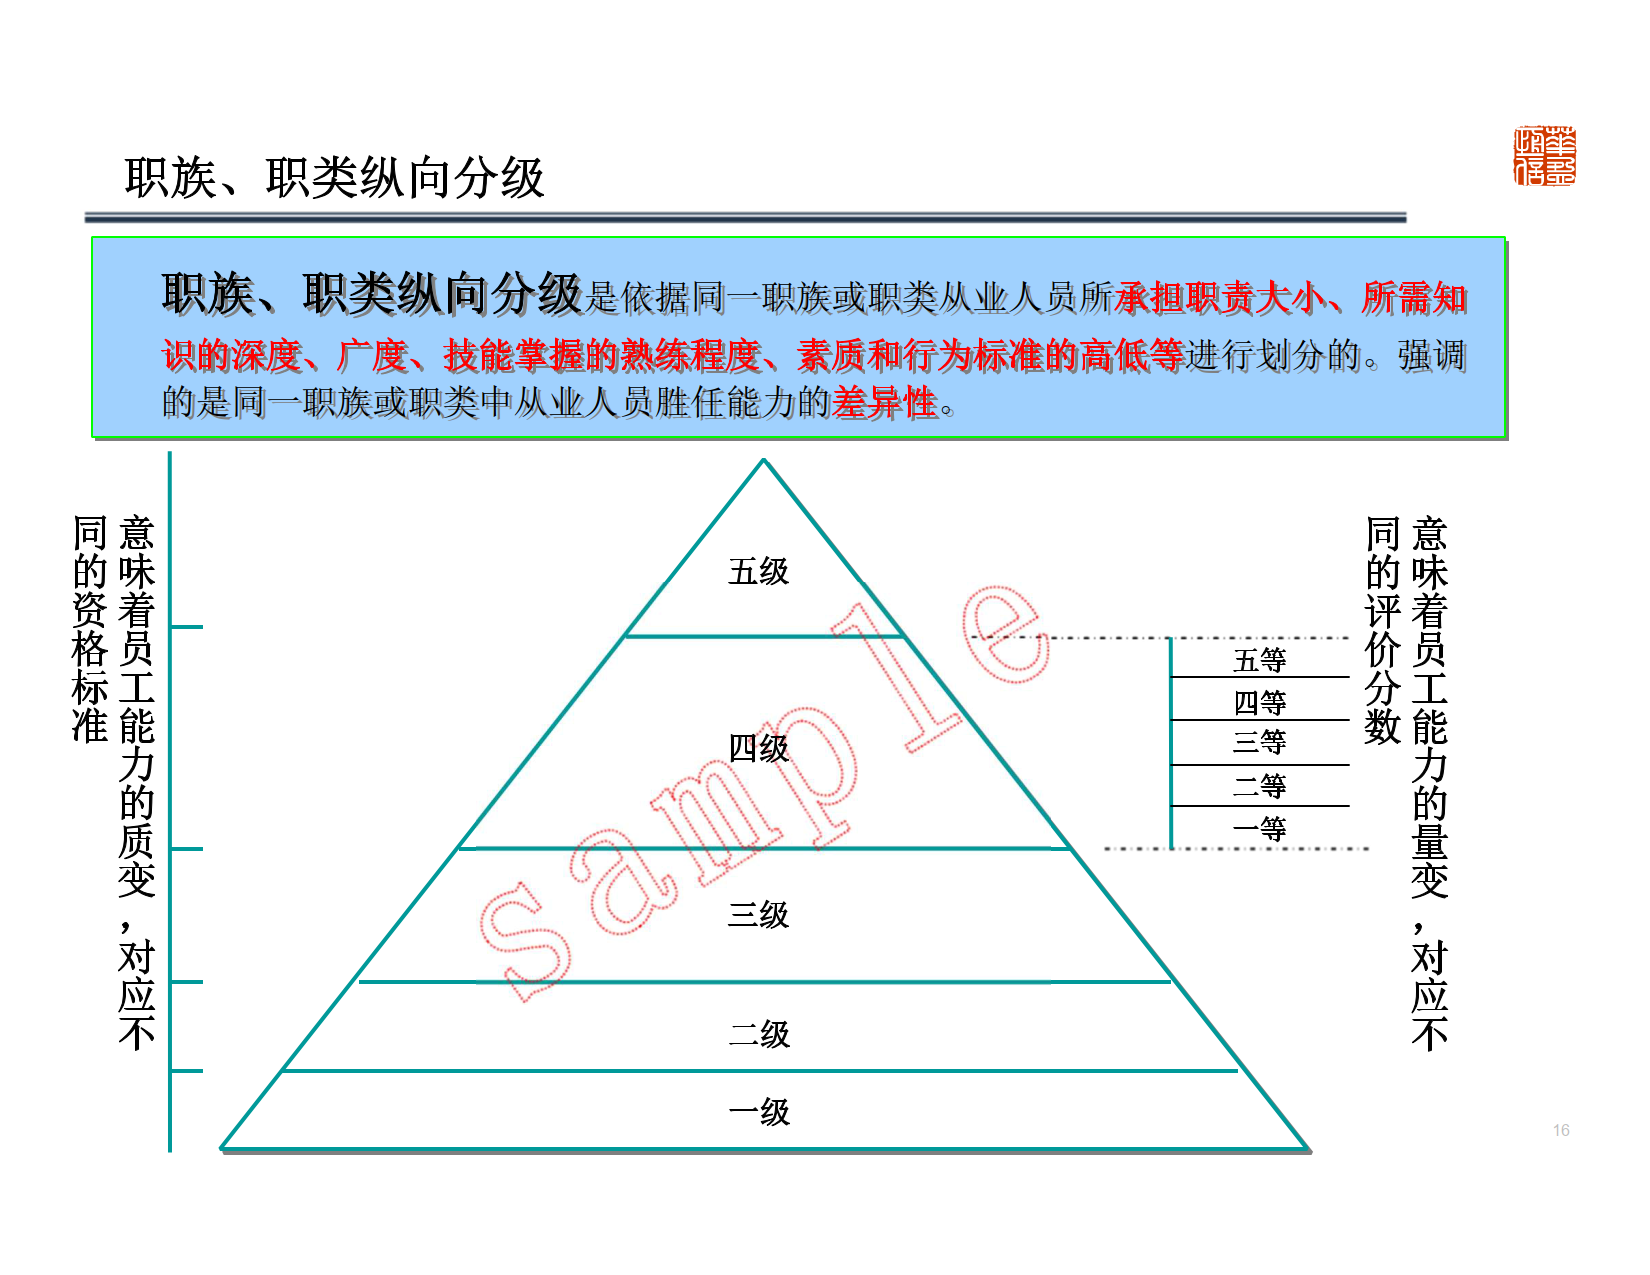 深圳XX管理顾问有限公司-基于能力的任职资格体系设计及应用 Copy_7.png